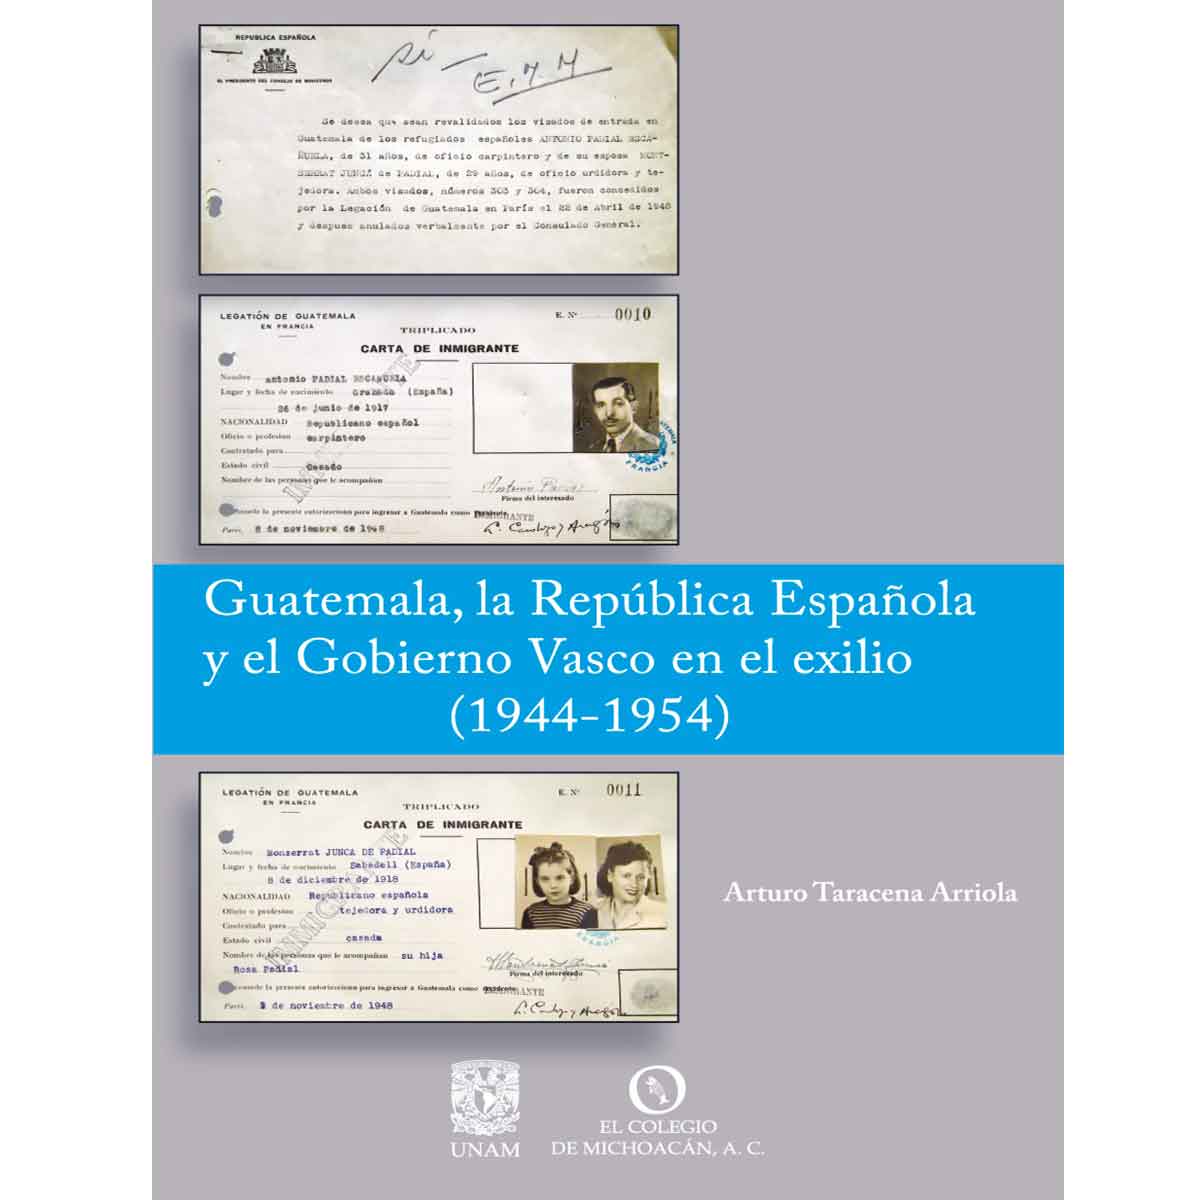 GUATEMALA, LA REPÚBLICA ESPAÑOLA Y EL GOBIERNO VASCO EN EL EXILIO (1944-1954)